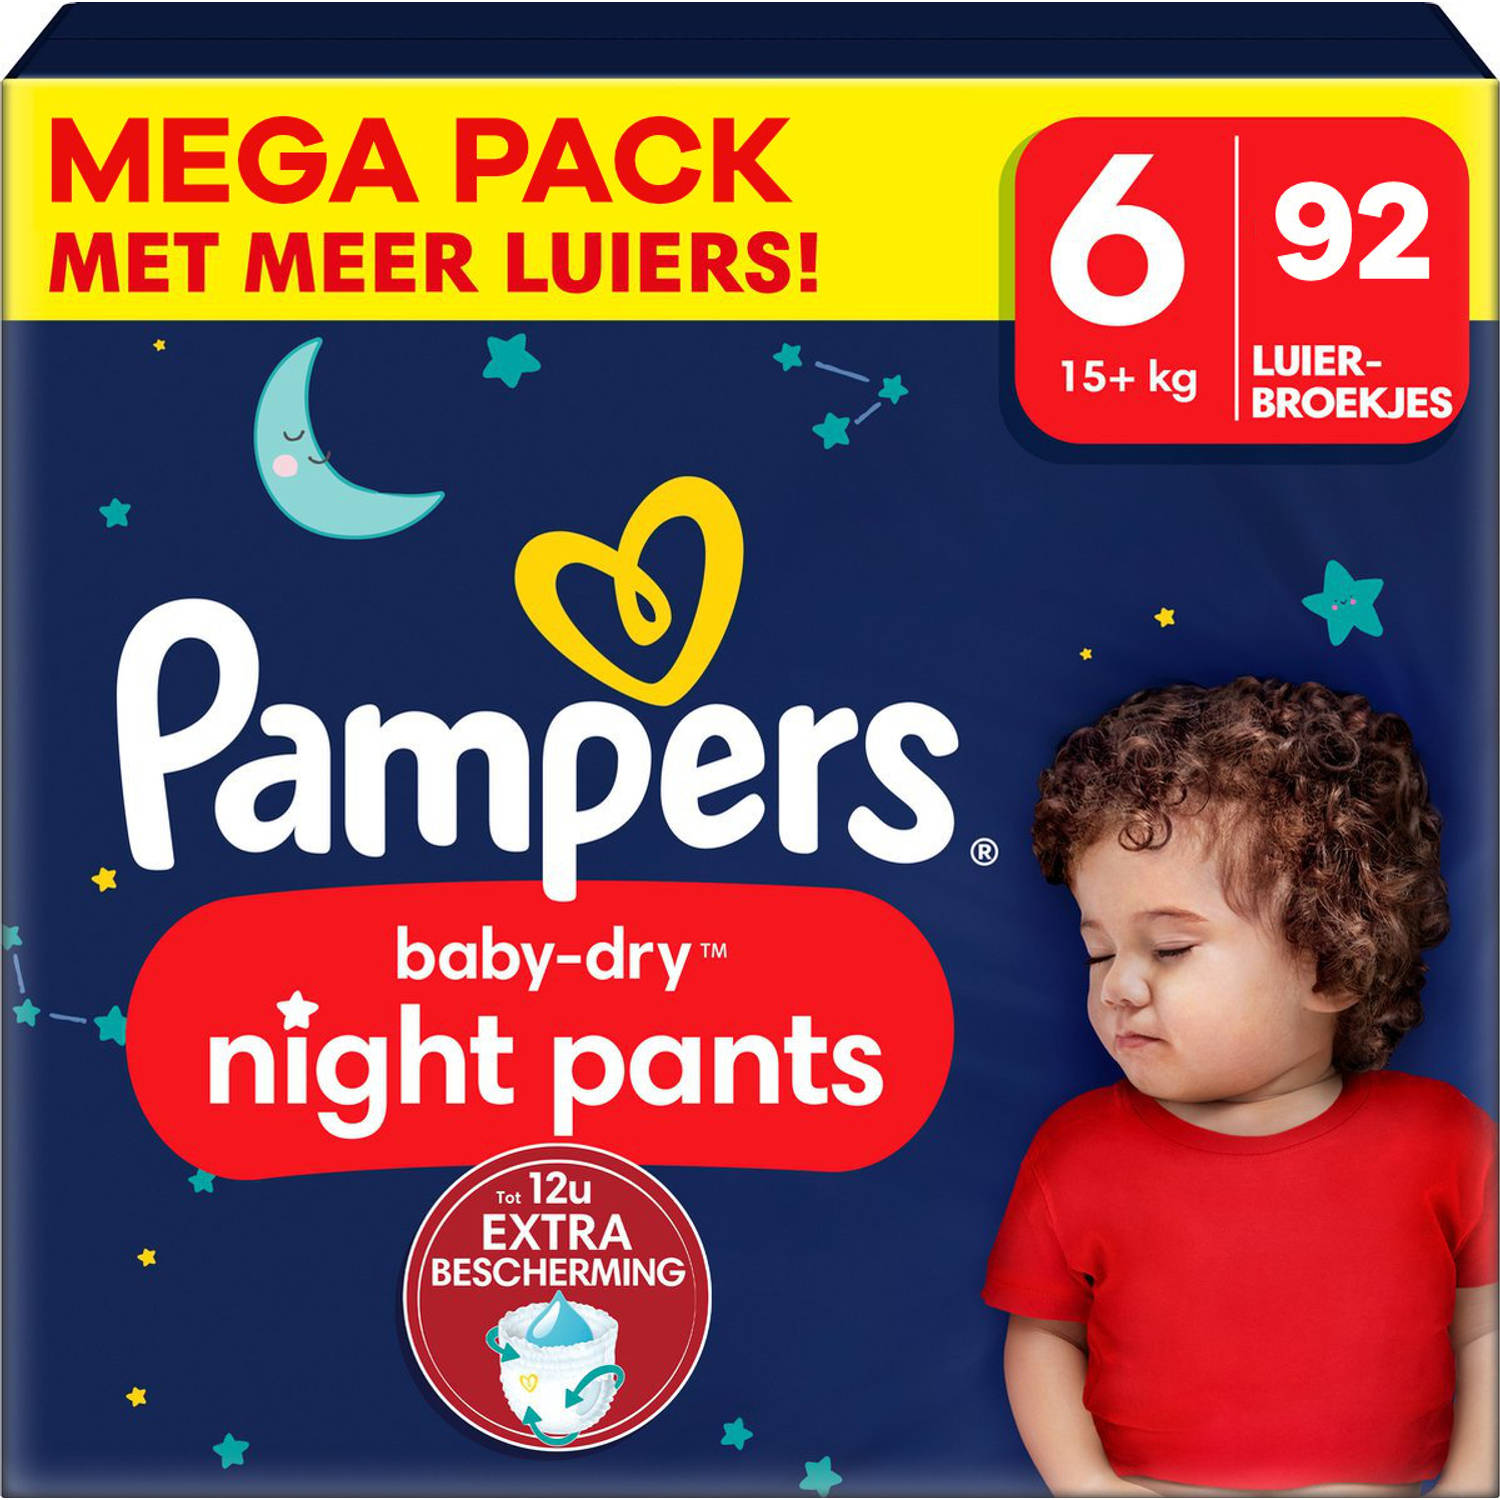 Pampers Baby Dry Night Pants Maat 6 Mega Pack 92 luierbroekjes